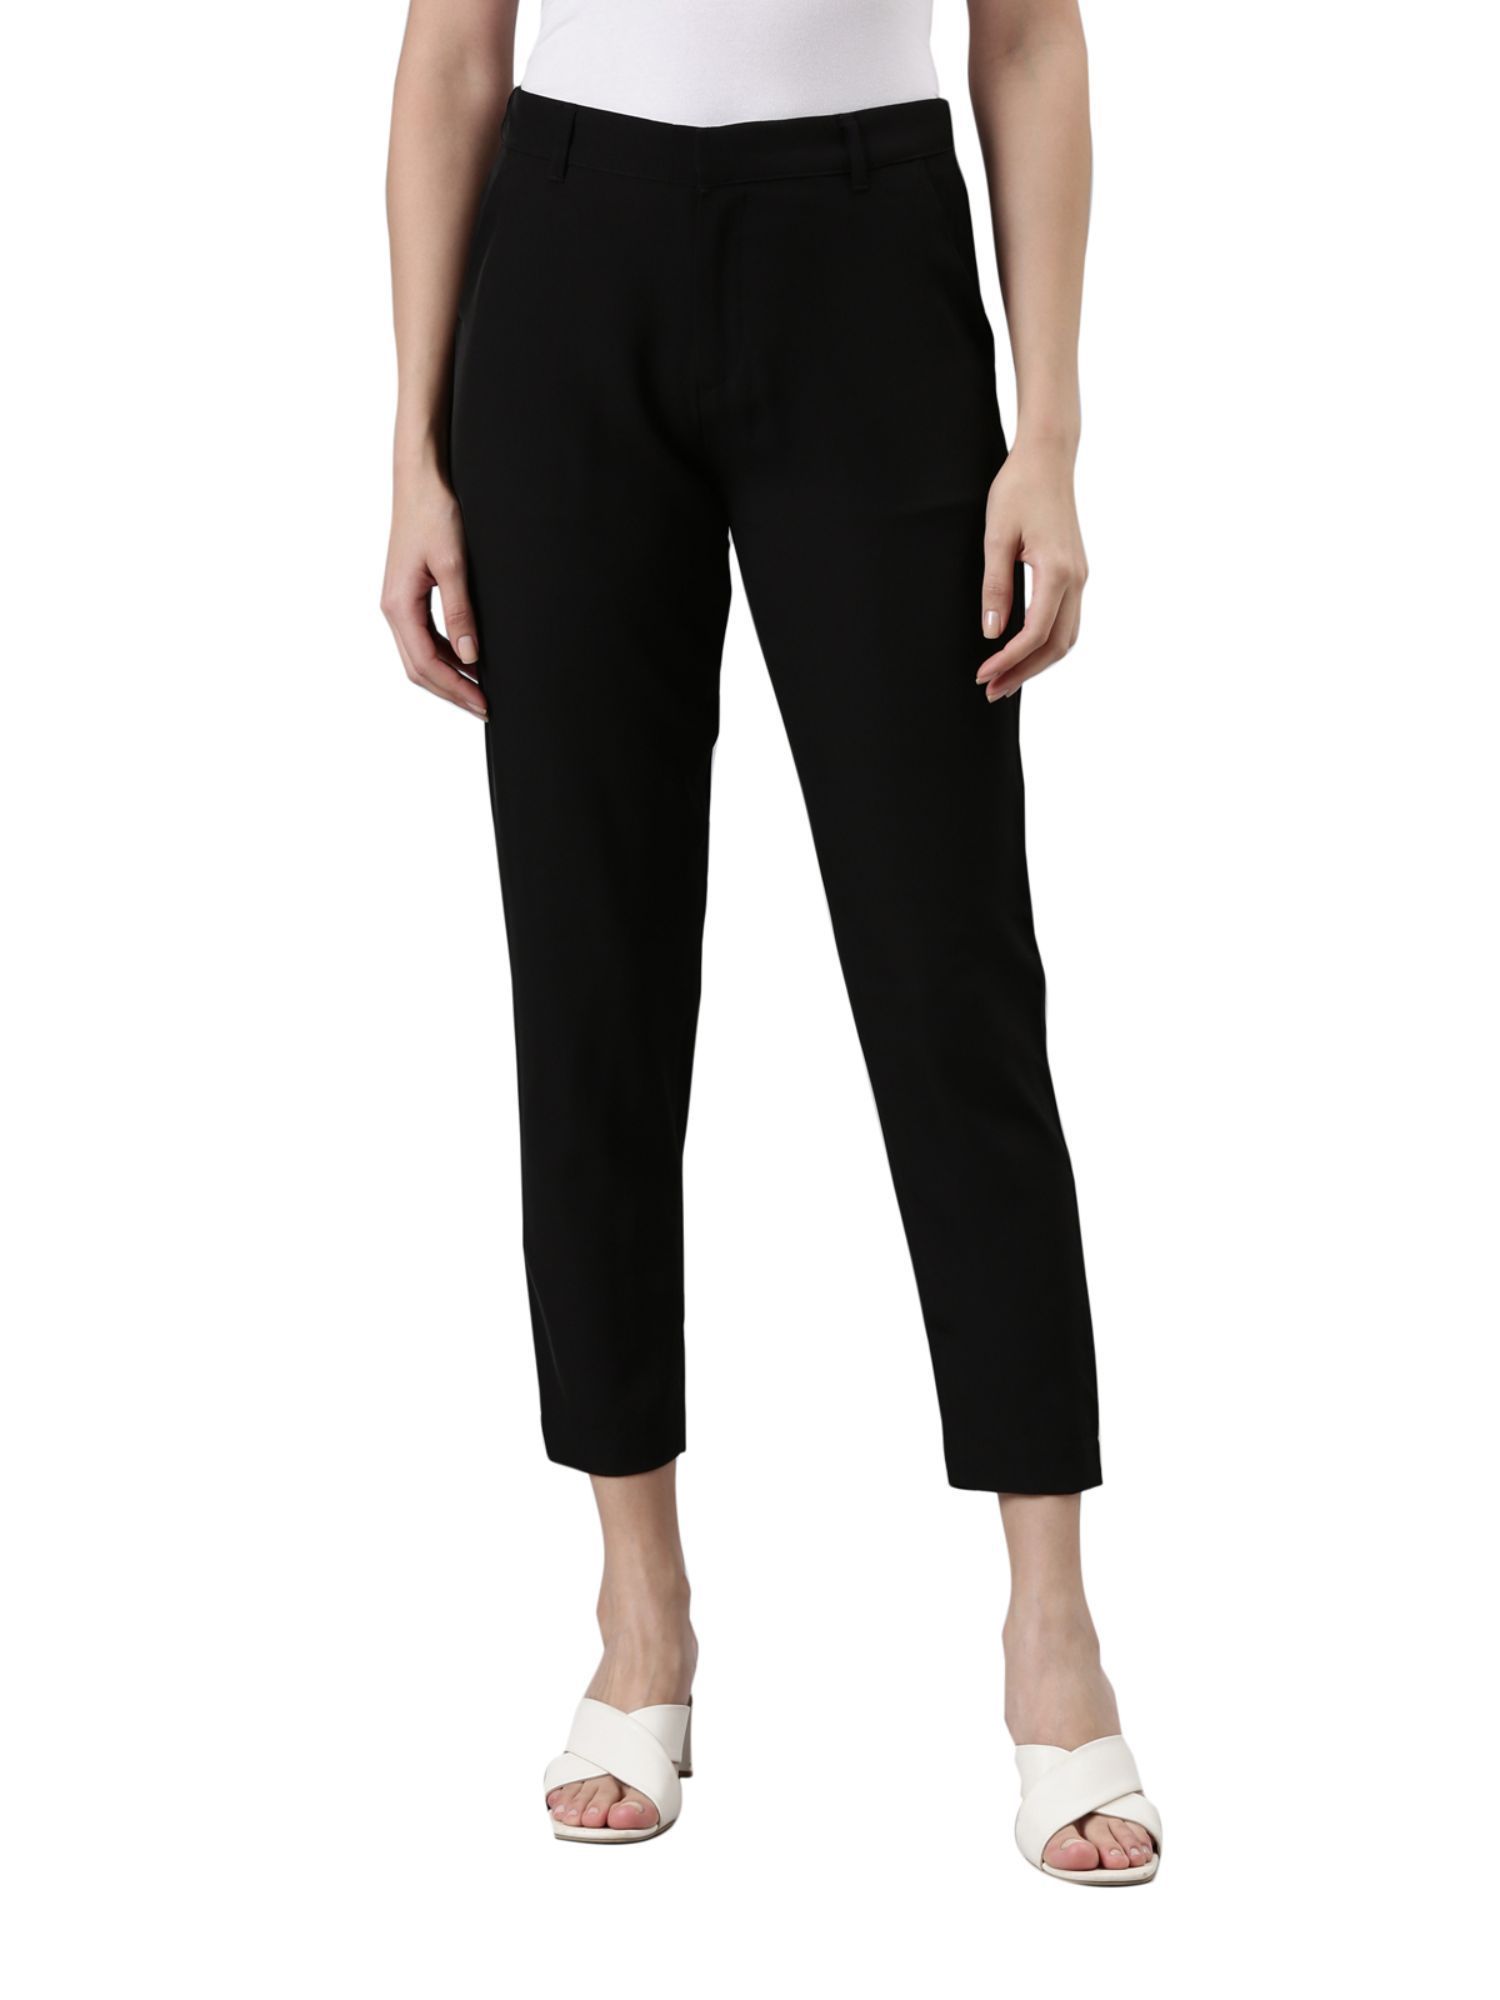 New Style Elegant Formal Office Pants Women Business Slim Trousers Work  Wear | eBay